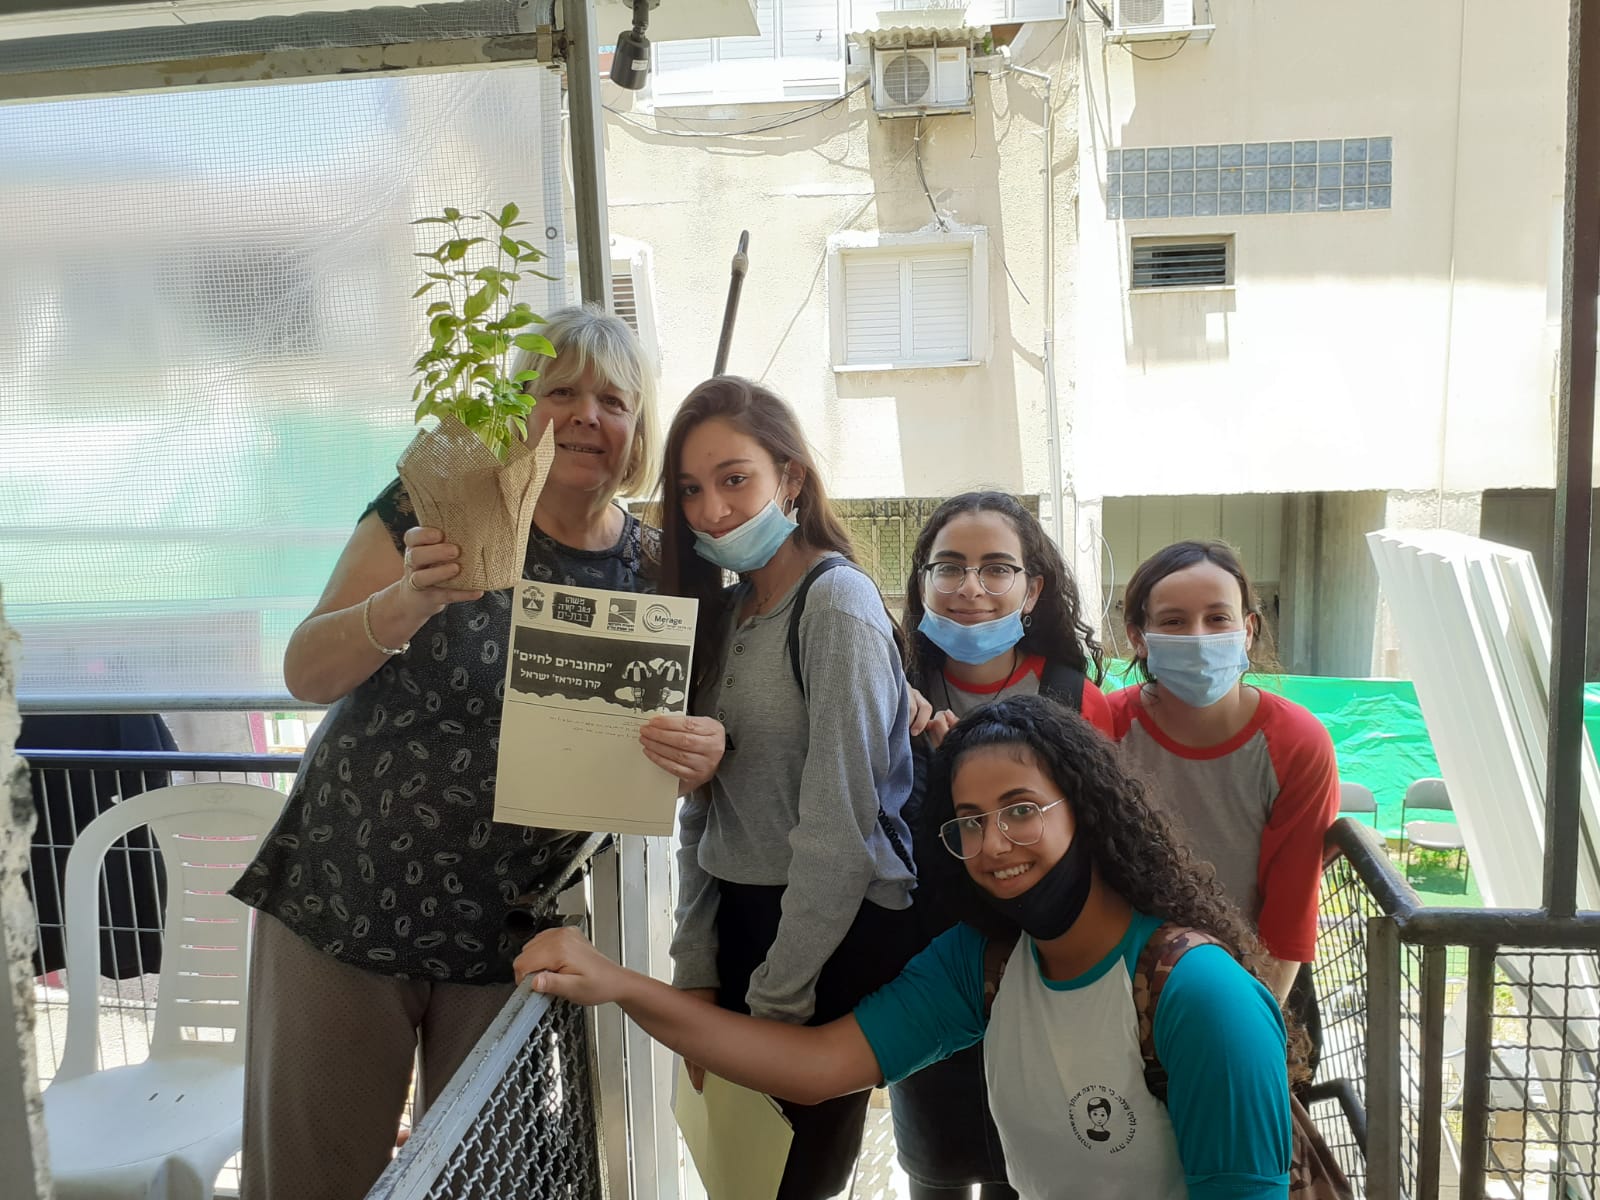 תלמידי העיר בת ים המשתתפים בתכנית "מחוברים לחיים" ביקרו את הקשישים בביתם בזמן הקורונה